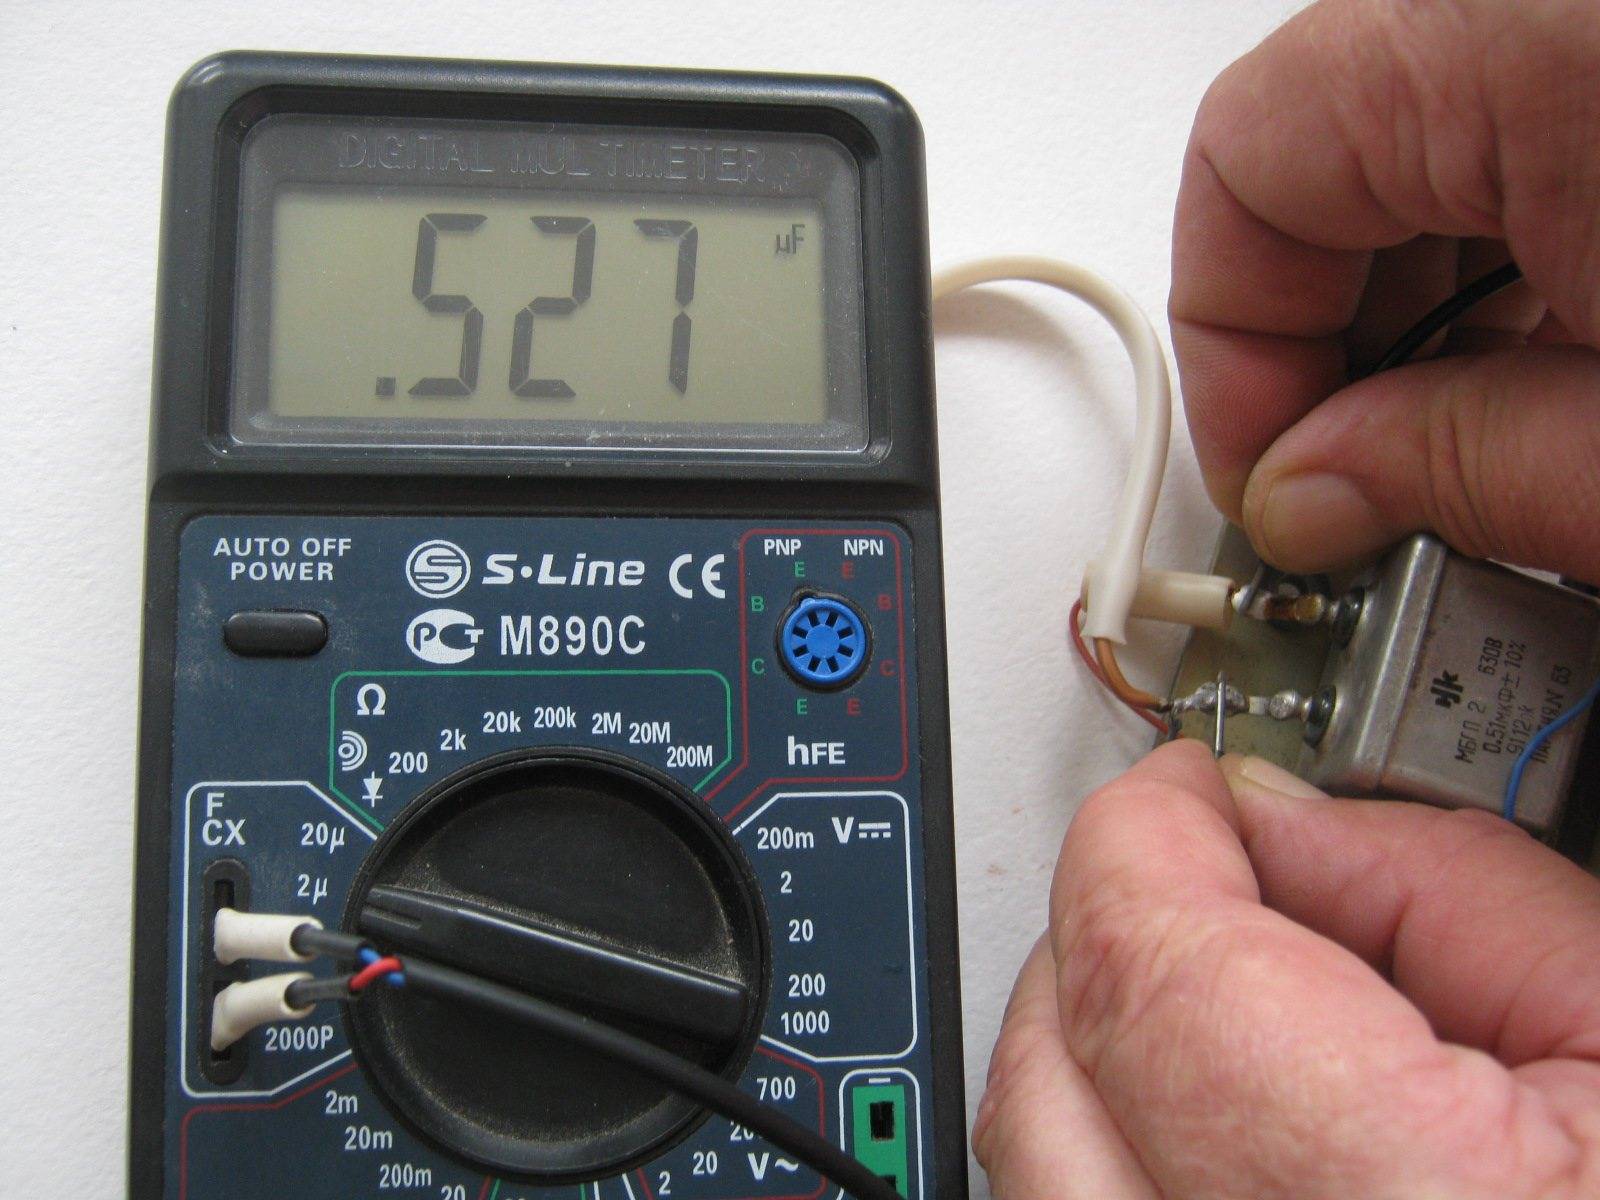 Как быстро проверить конденсатор мультиметром